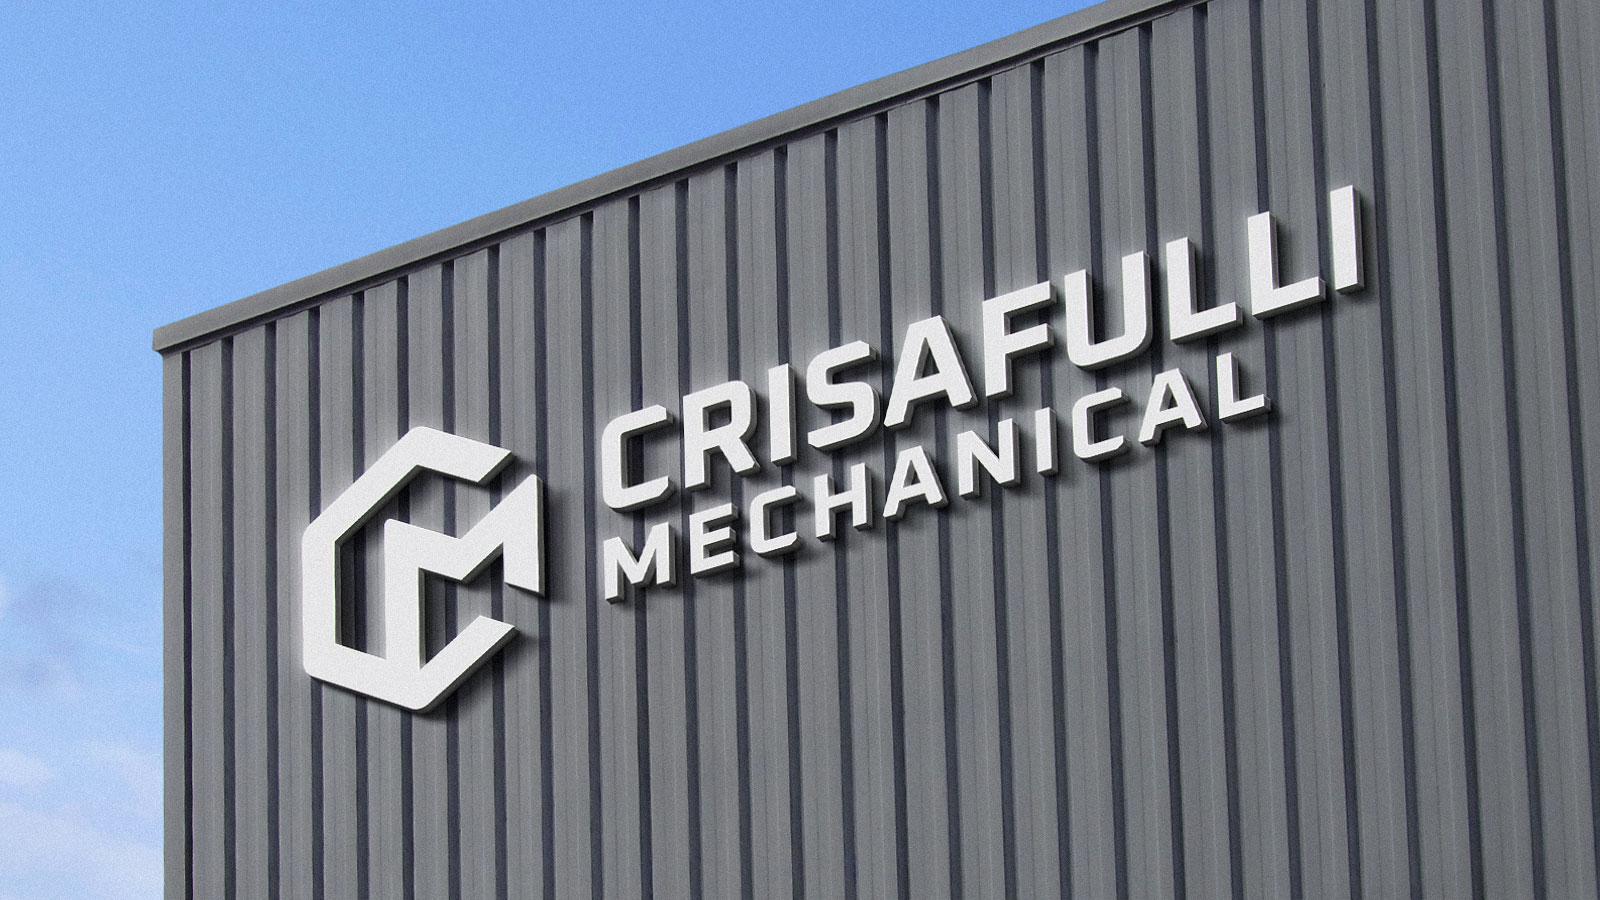 Crisafulli Mechanical | Exterior Signage